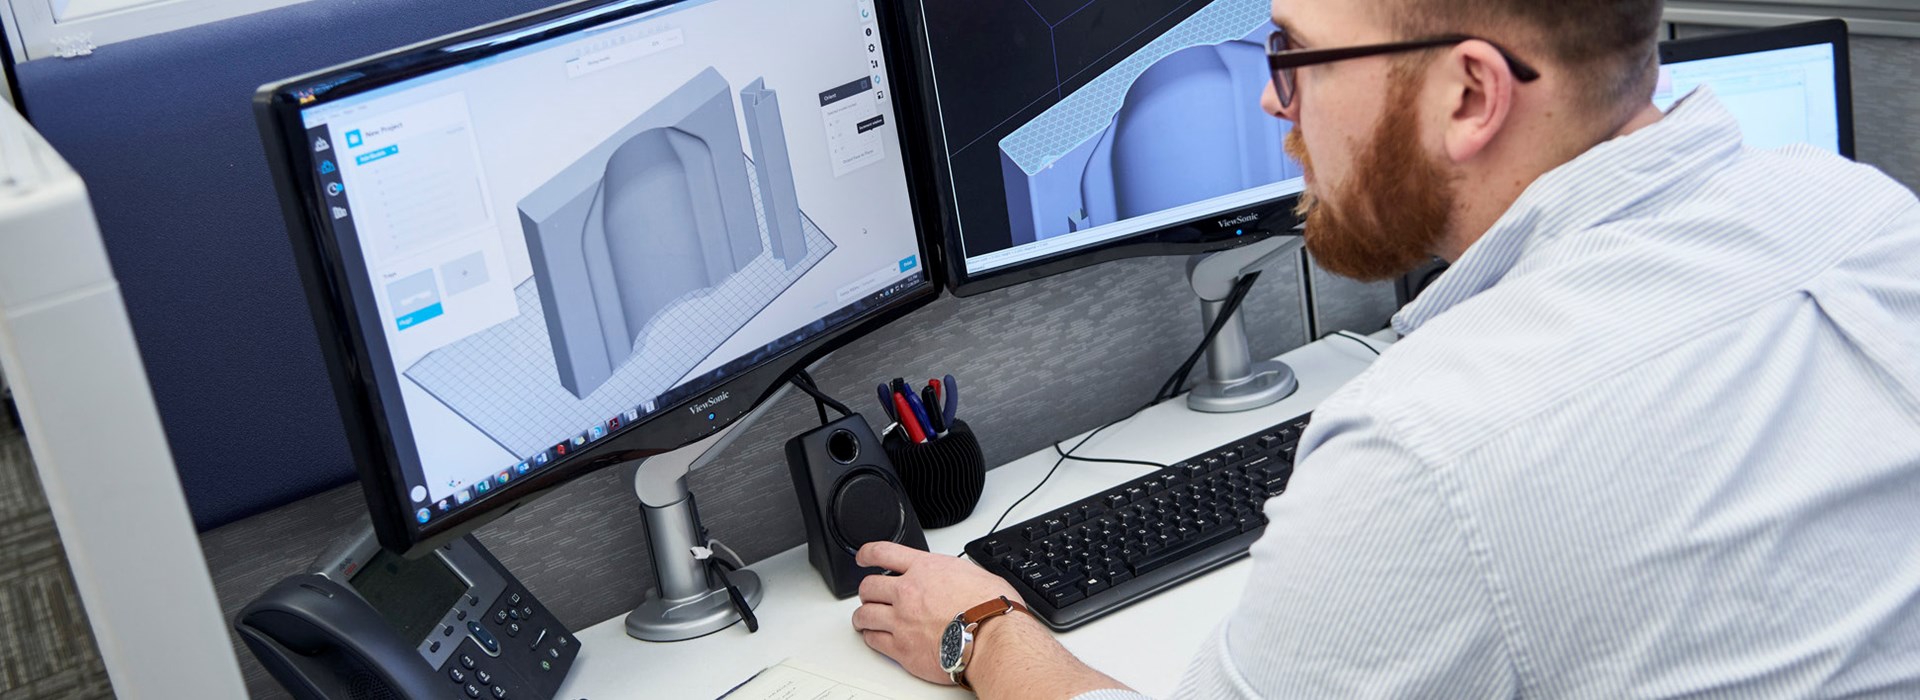 SAF Technology - Design Guide - Engineer designing parts for the H350 3D Printer.